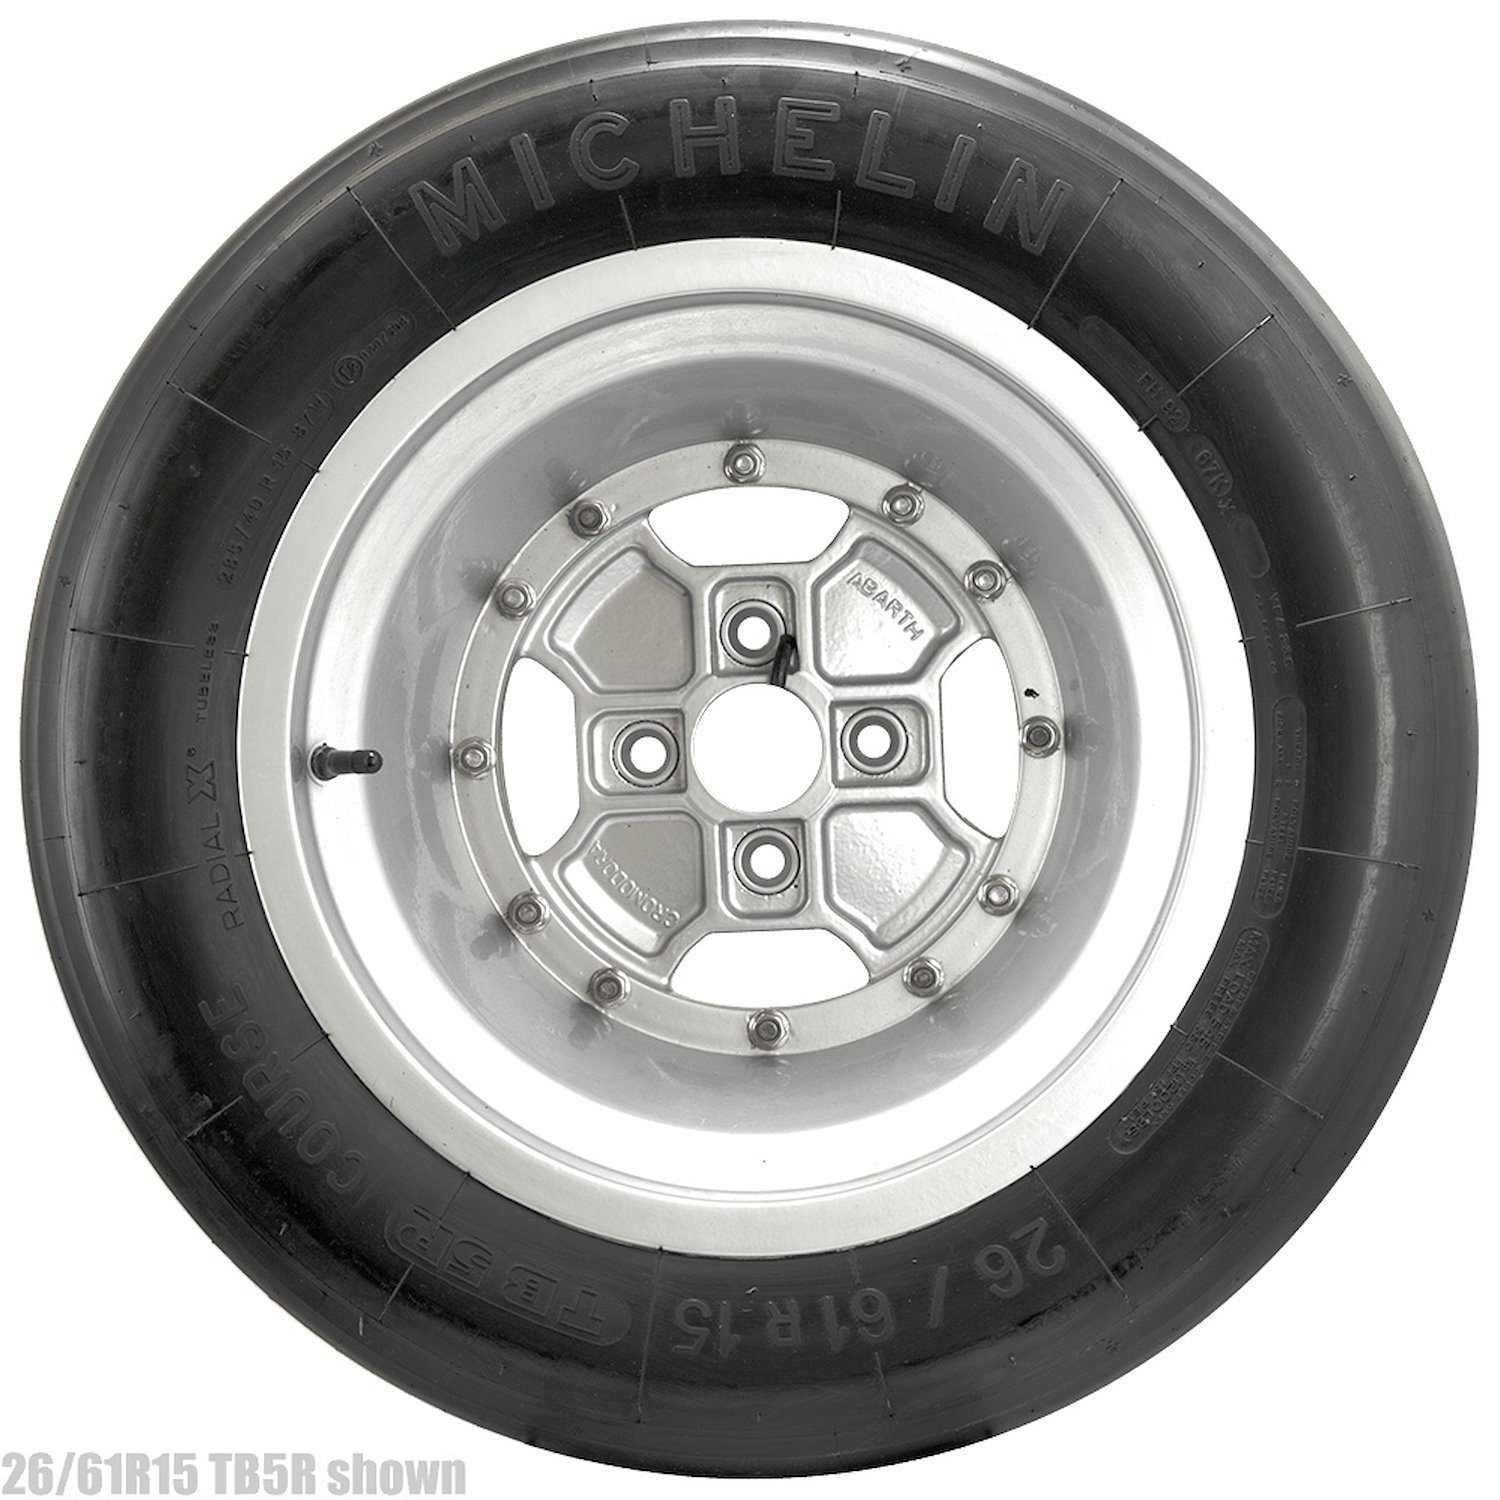 8062 Tire, Michelin TB5+, R Medium Compound, 23/62-15